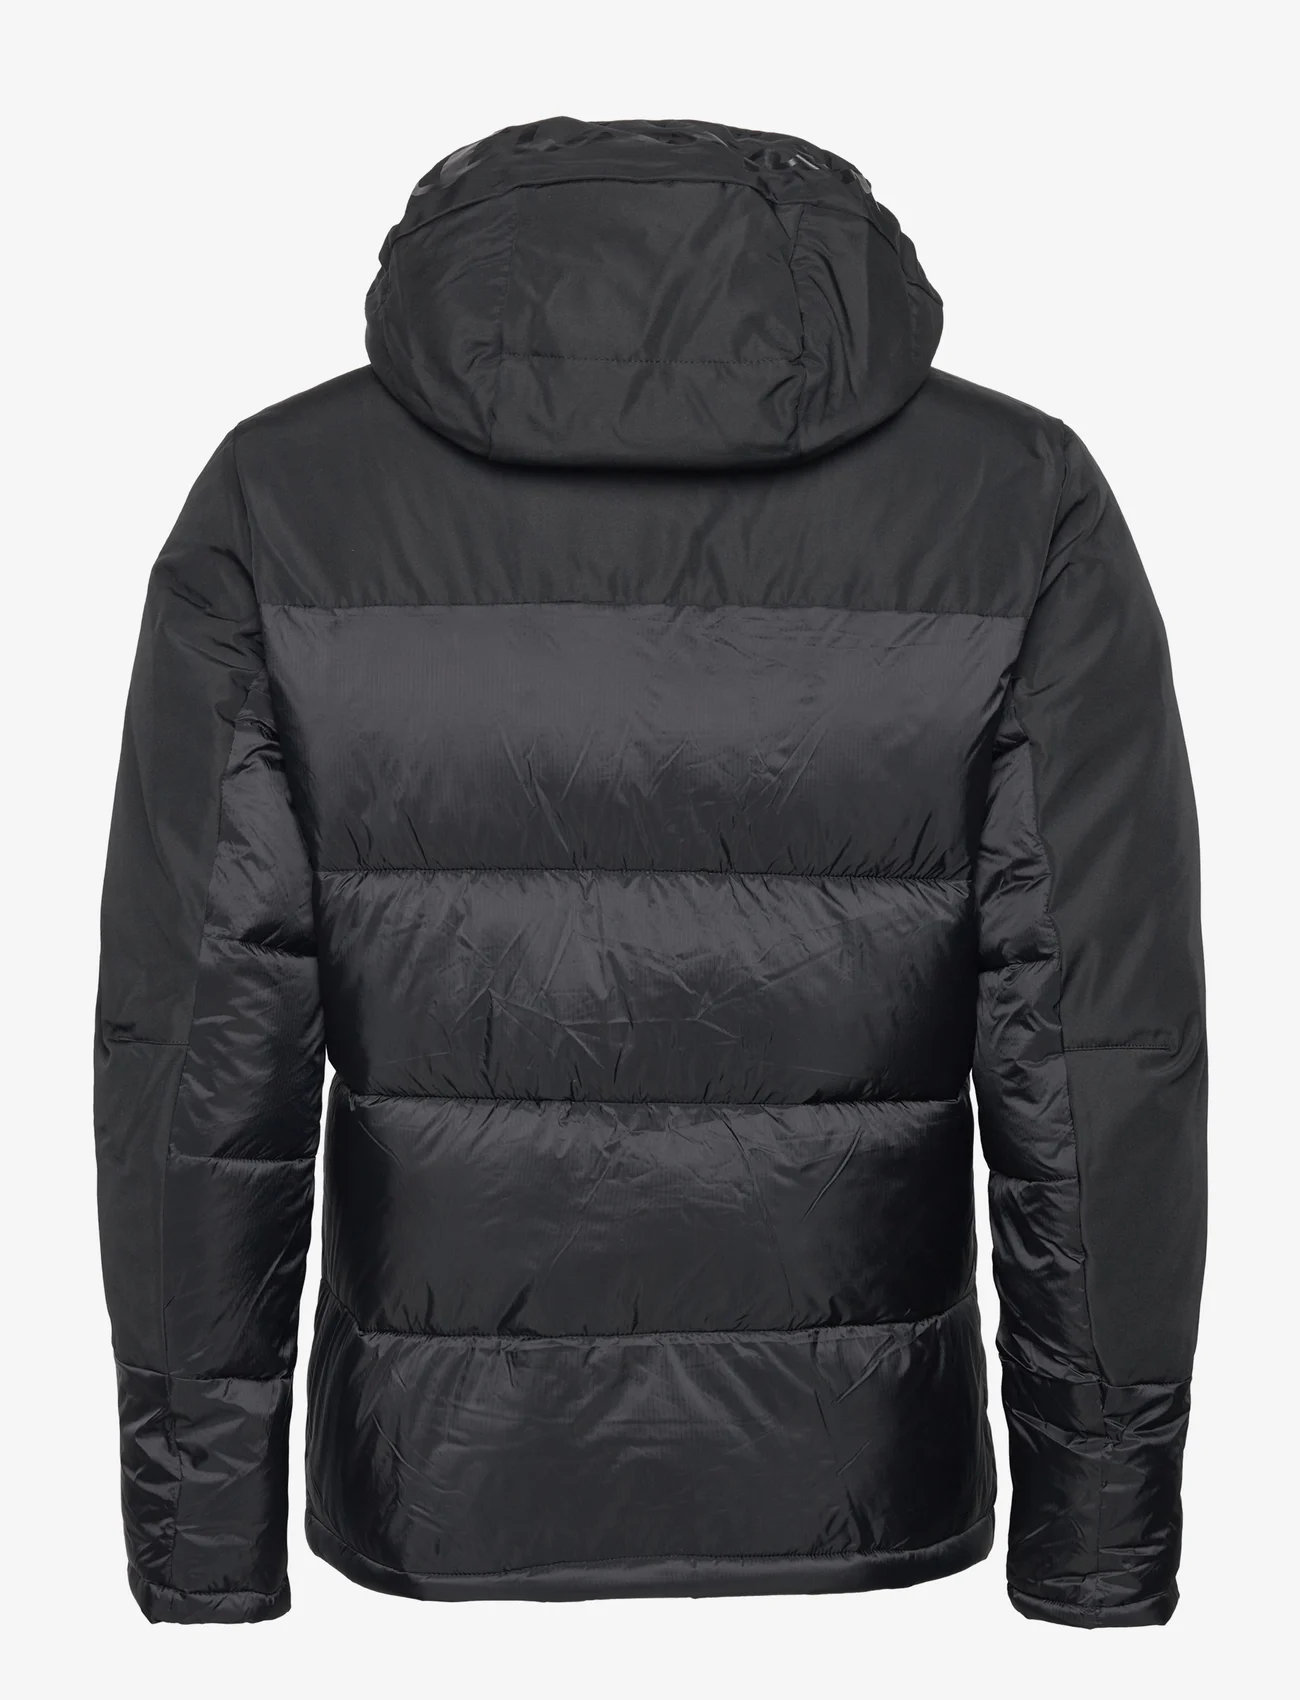 Champion - Hooded Jacket - vinterjakker - black beauty - 1